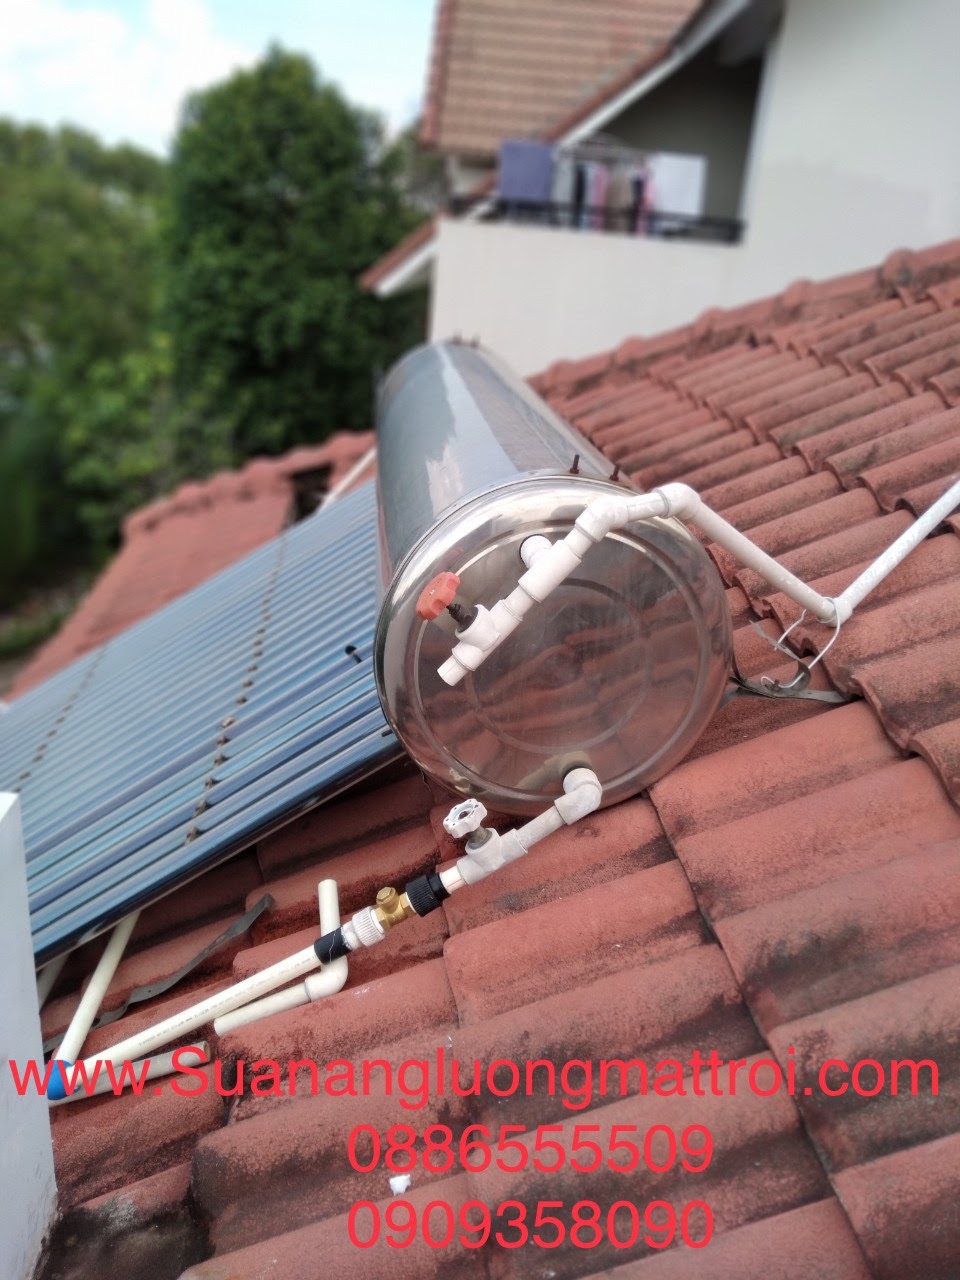 5 lý do bạn nên sửa máy nước nóng năng lượng mặt trời quận Bình Thạnh HCM tại Điện Nước Minh Hương